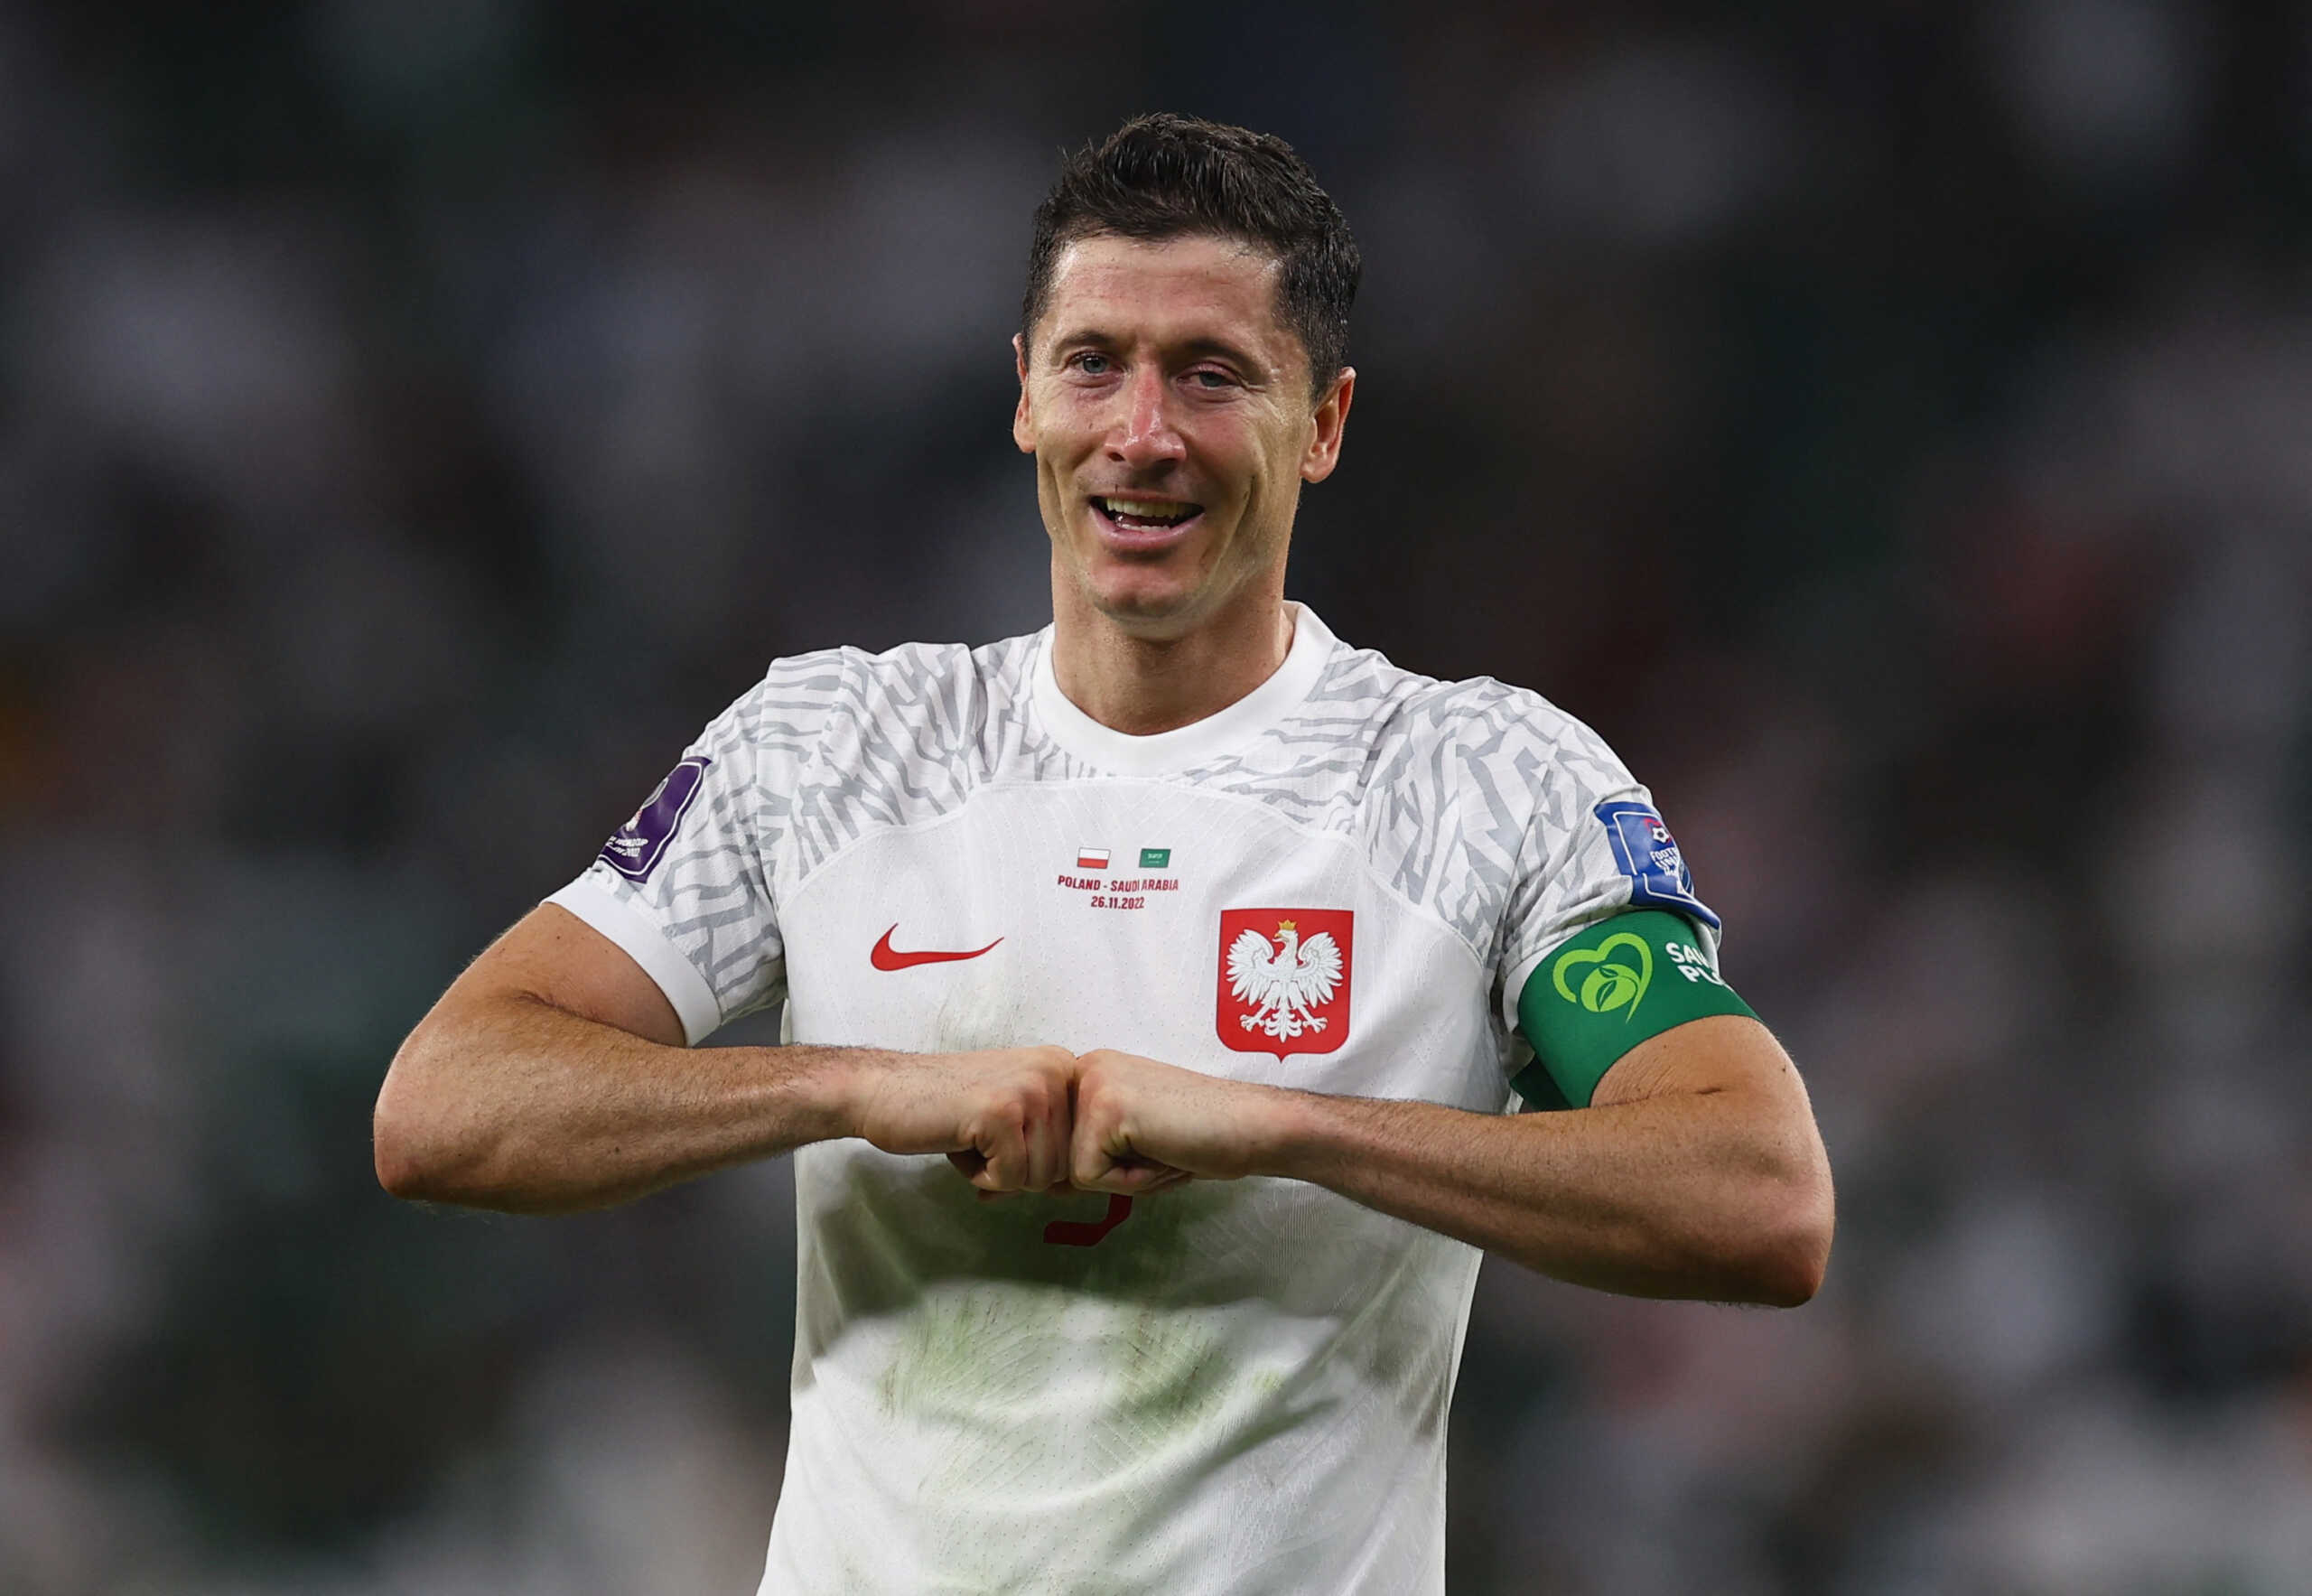 Μουντιάλ 2022: Δάκρυσε ο Ρόμπερτ Λεβαντόφσκι μετά το γκολ που πέτυχε στο Πολωνία – Σαουδική Αραβία